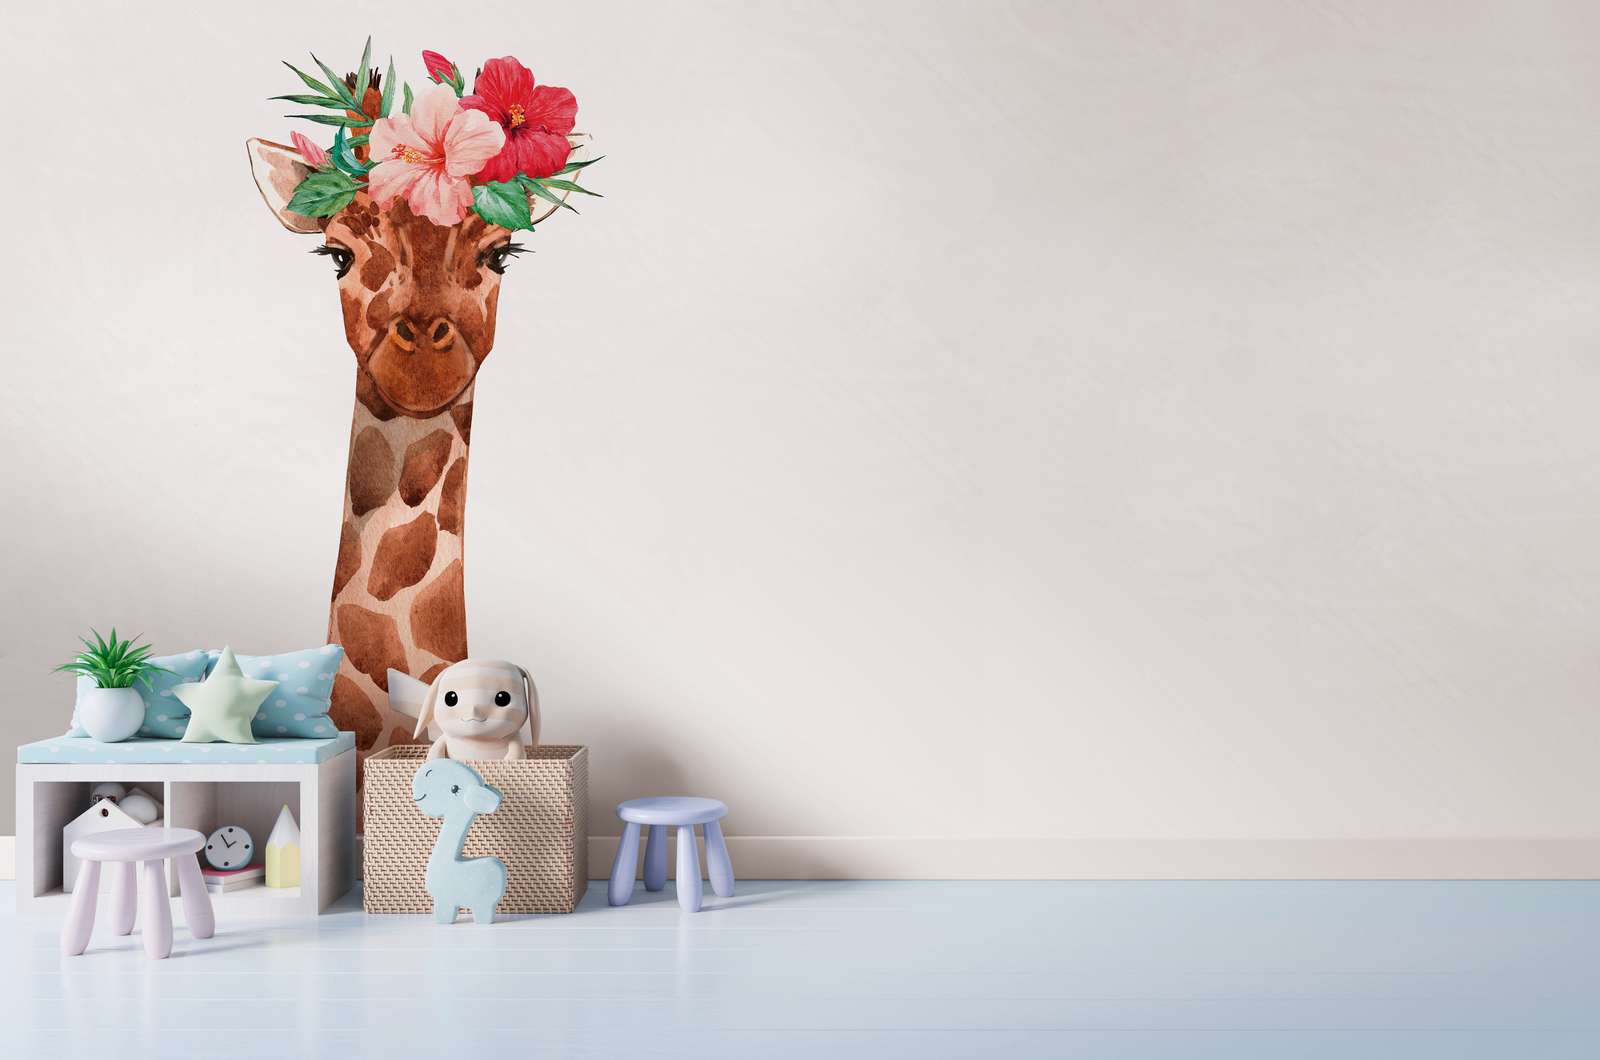             Fototapete Kinderzimmer mit Giraffe und floraler Kopfbedeckung – Weiß, Bunt
        